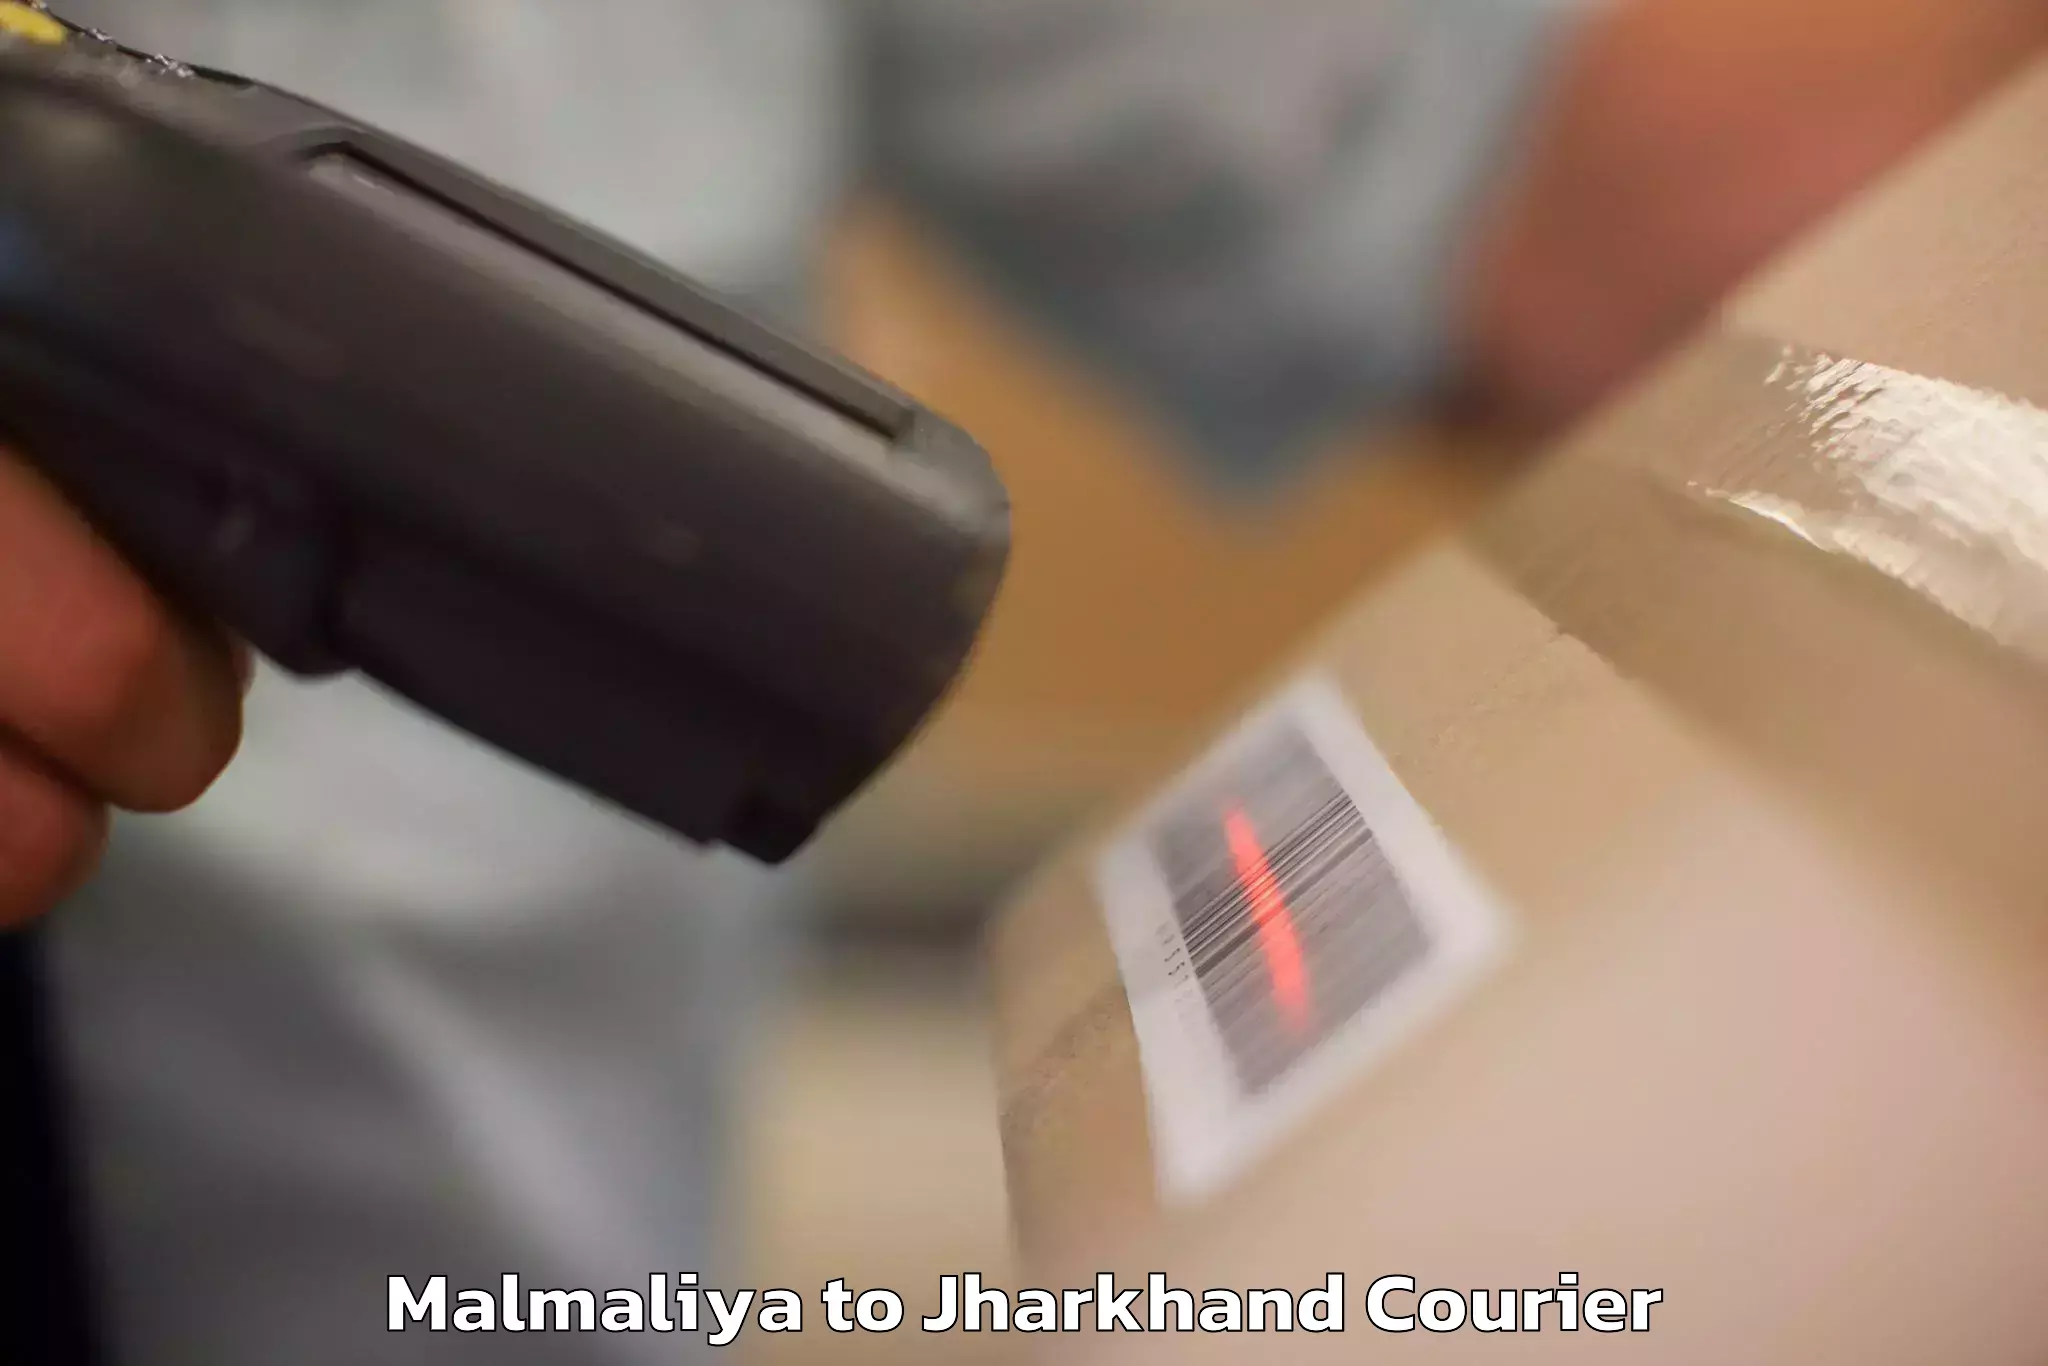 Luggage forwarding service Malmaliya to Rajmahal